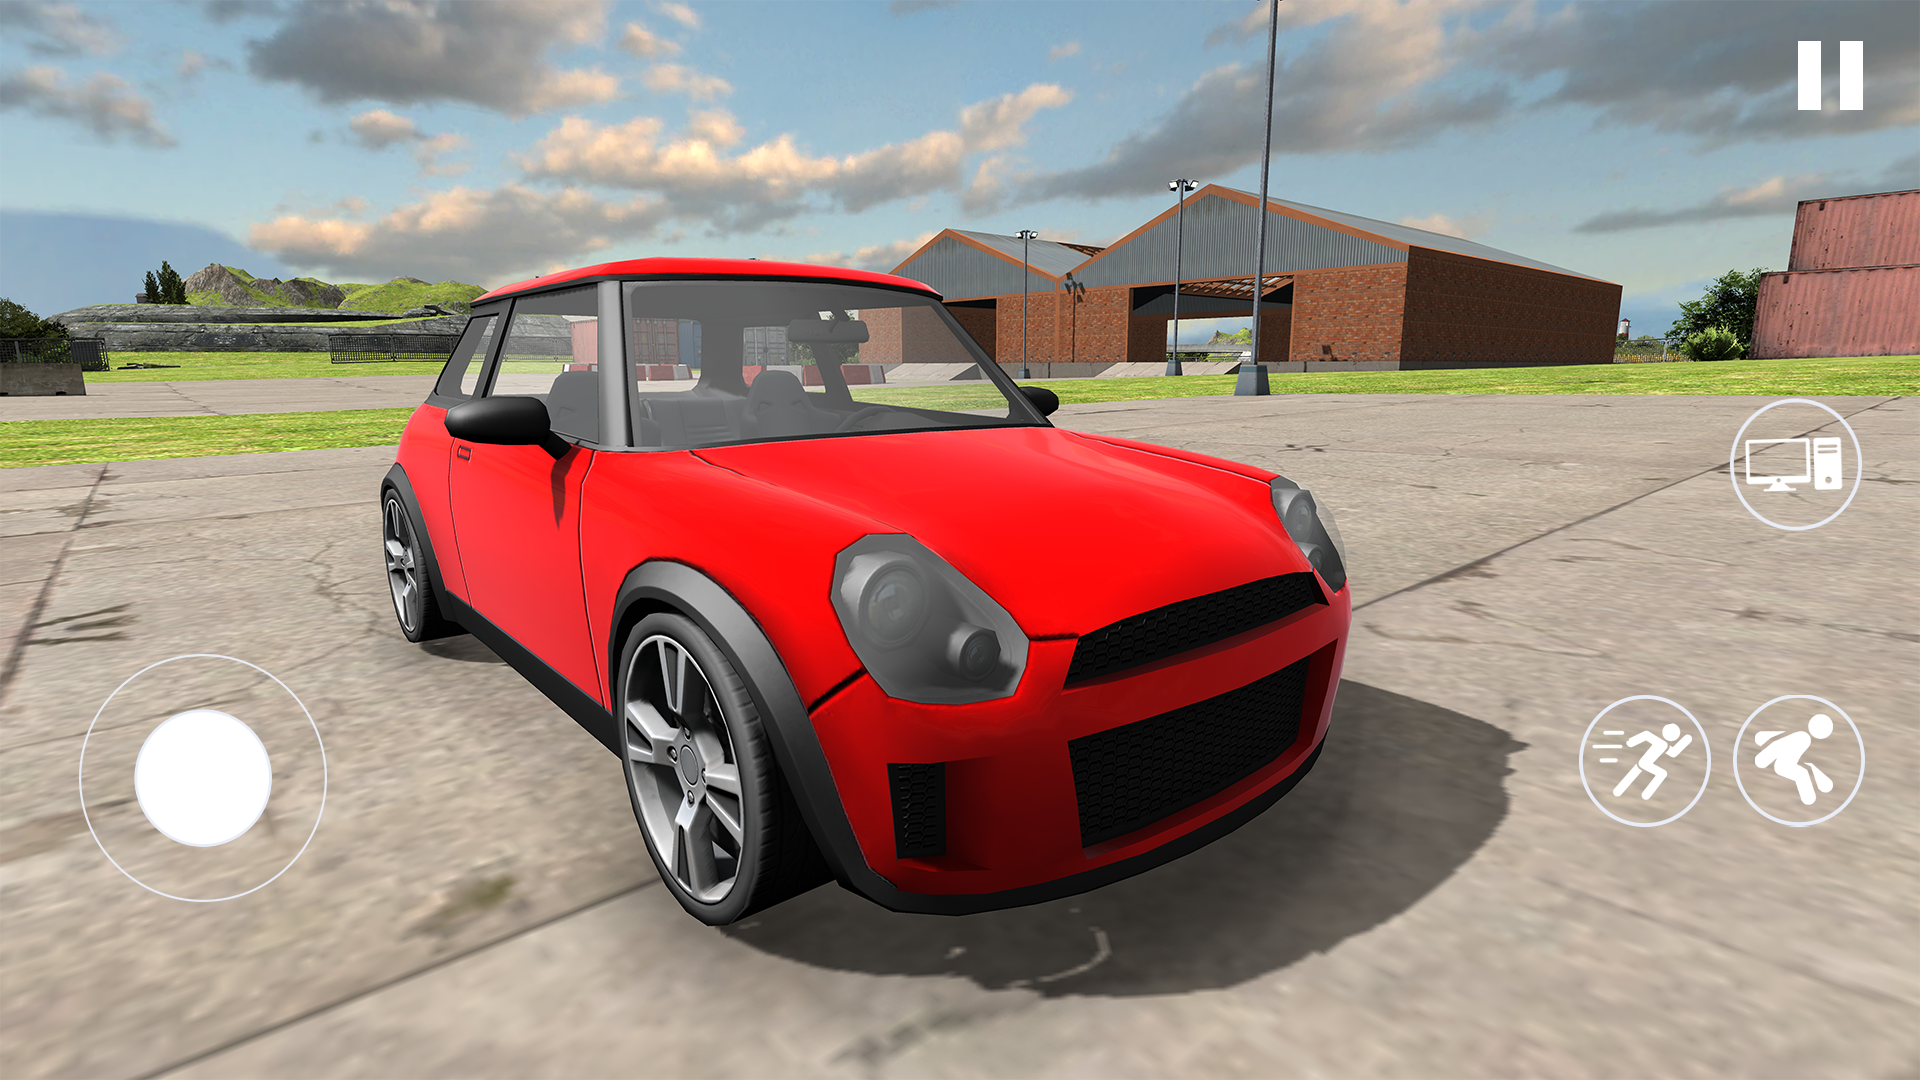 Screenshot 1 of Car For Trade: Saler Simulator 1.4